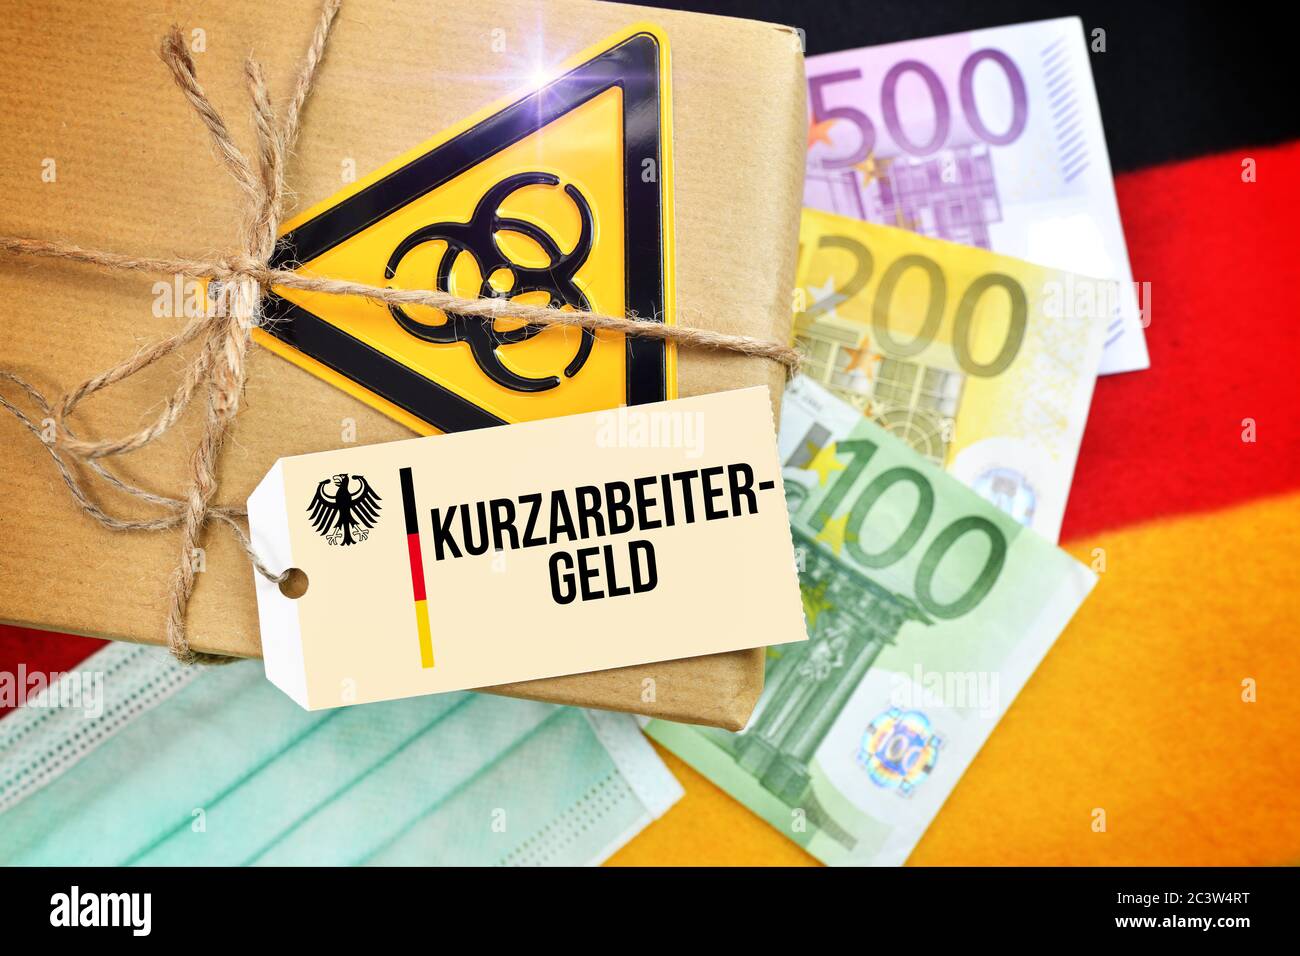 FOTOMONTAGGIO, pacchetto Biogefährdungszeichen sulla bandiera tedesca con tag e l'etichetta Kurzarbeitergeld, FOTOMONTAGE, Paket mit Biogefährdungszeichen auf Foto Stock